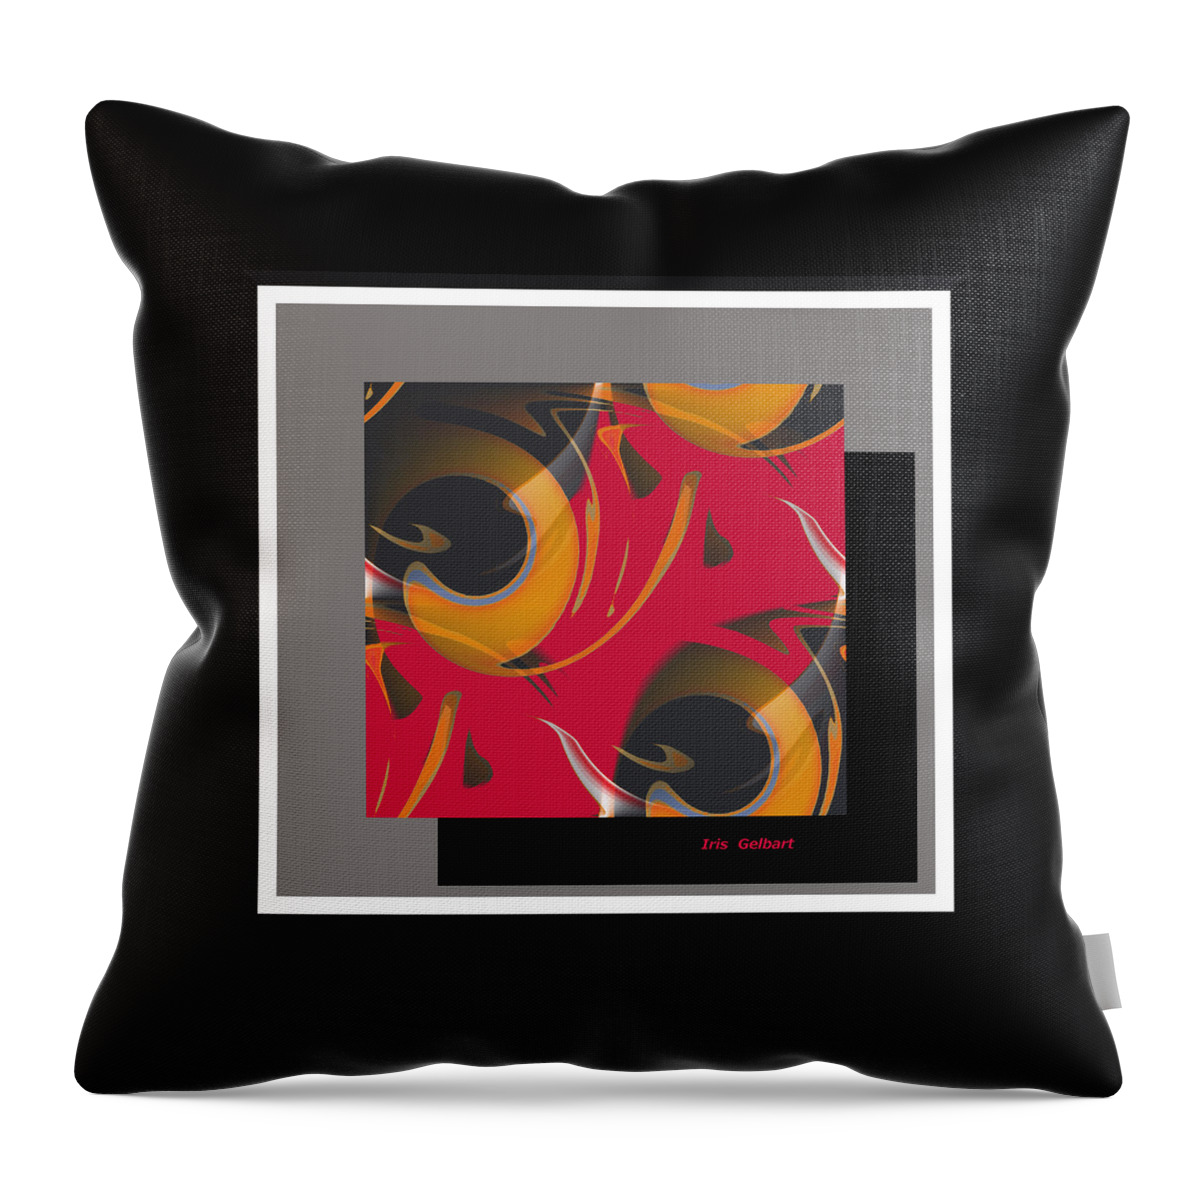 Abstract Throw Pillow featuring the digital art Dream #2 by Iris Gelbart